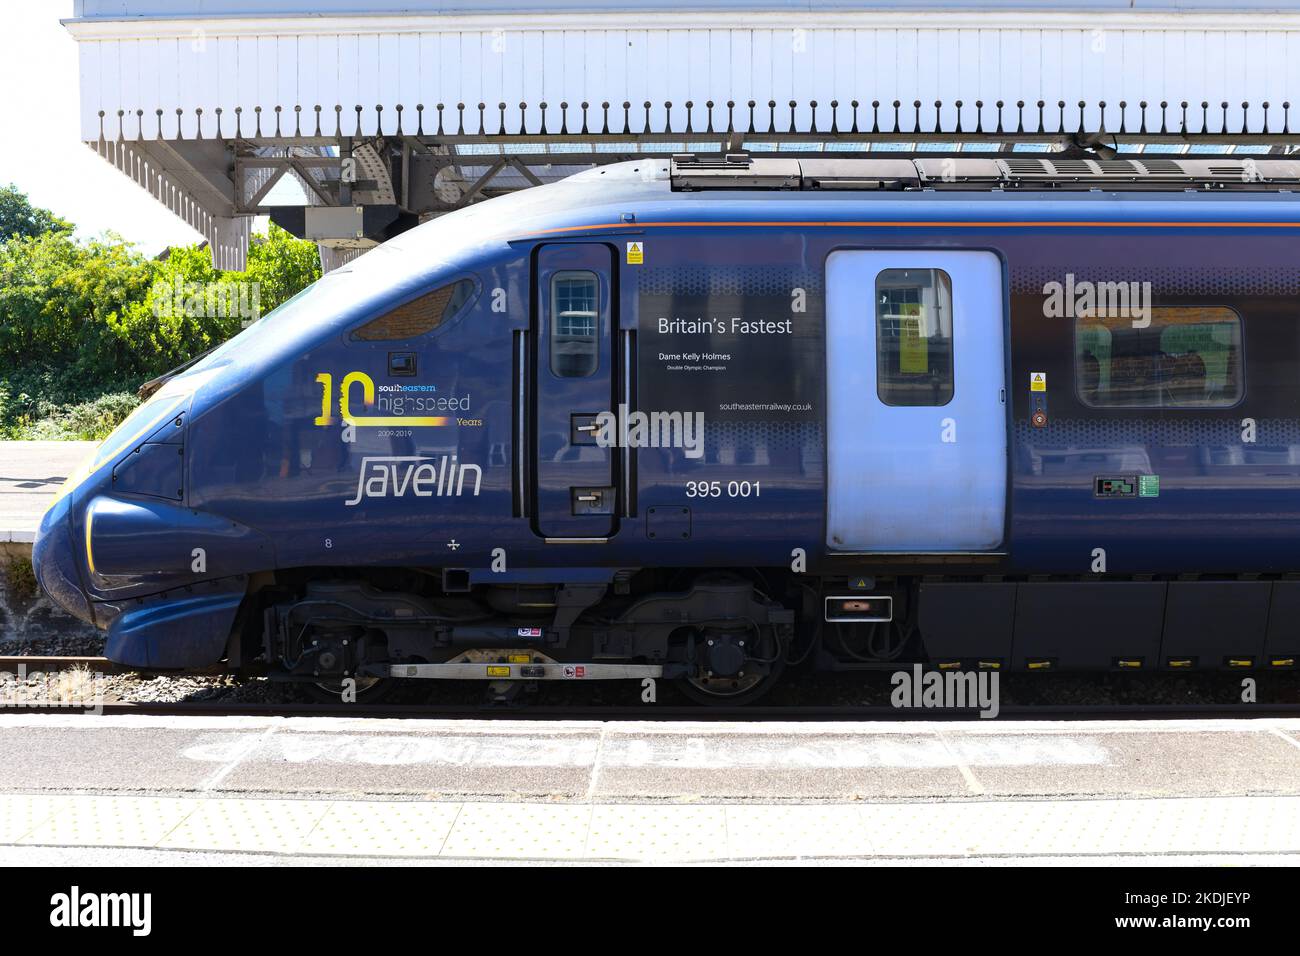 Ein Speerzug der Klasse 395001 namens Britains hat Kelly Holmes in Margate Station, Kent, England, Großbritannien, gefressen Stockfoto